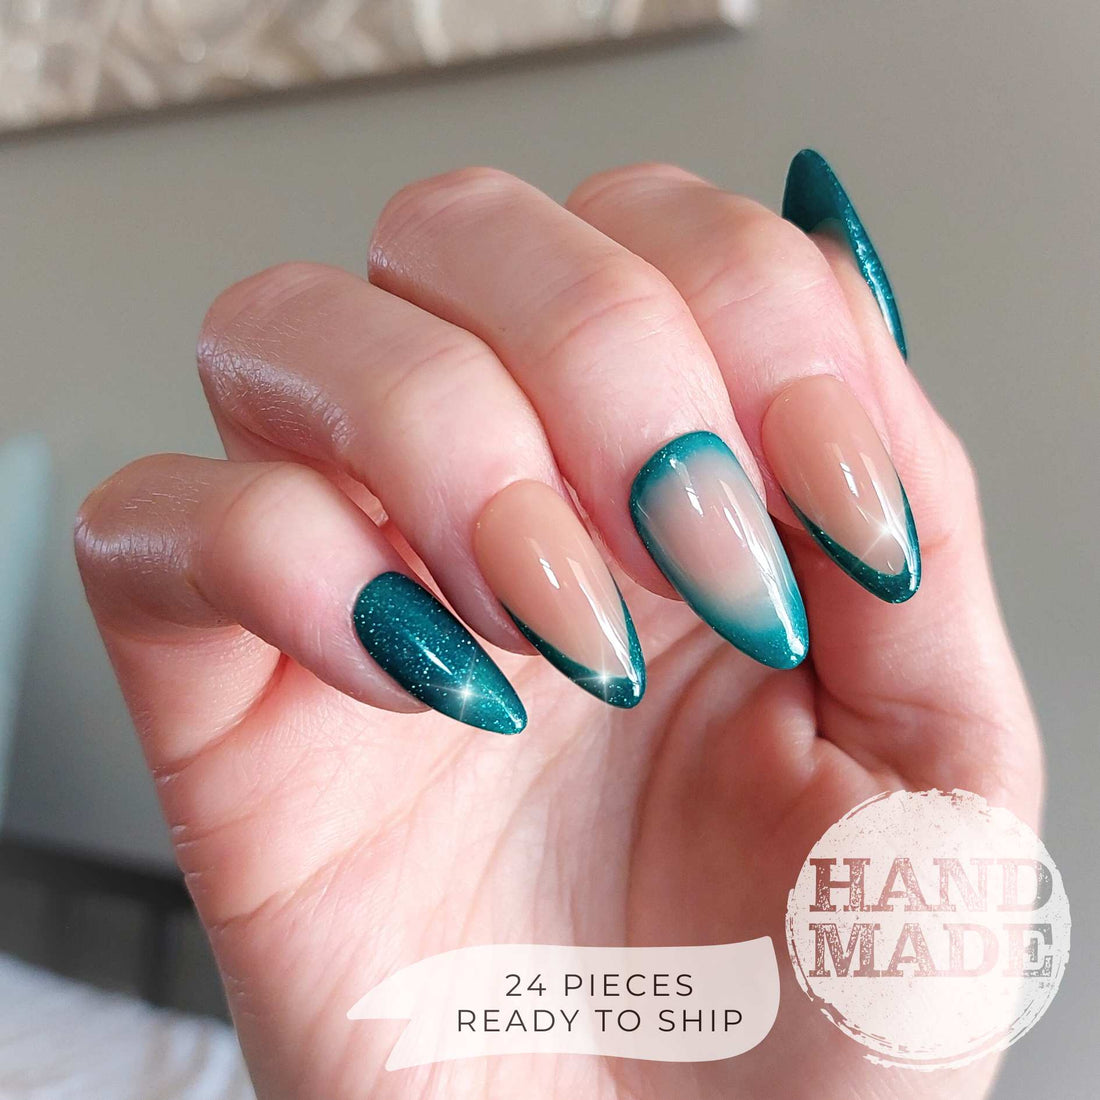 Mermaid Shimmer Nails (24pcs) - Medium Almond